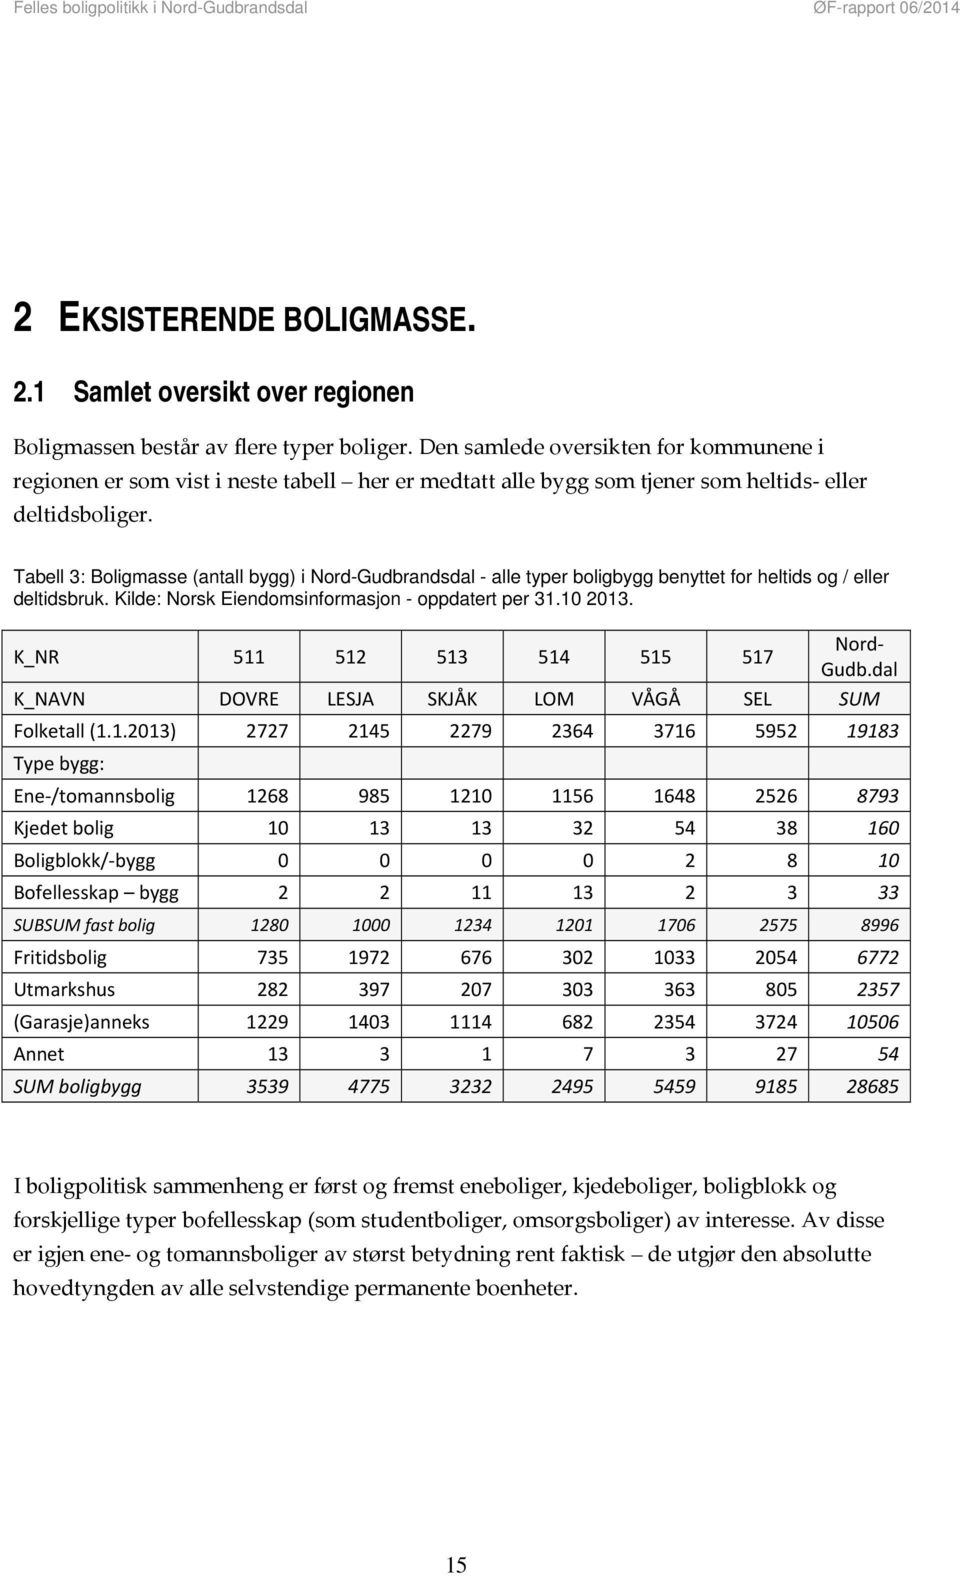 Tabell 3: Boligmasse (antall bygg) i Nord-Gudbrandsdal - alle typer boligbygg benyttet for heltids og / eller deltidsbruk. Kilde: Norsk Eiendomsinformasjon - oppdatert per 31.10 2013.